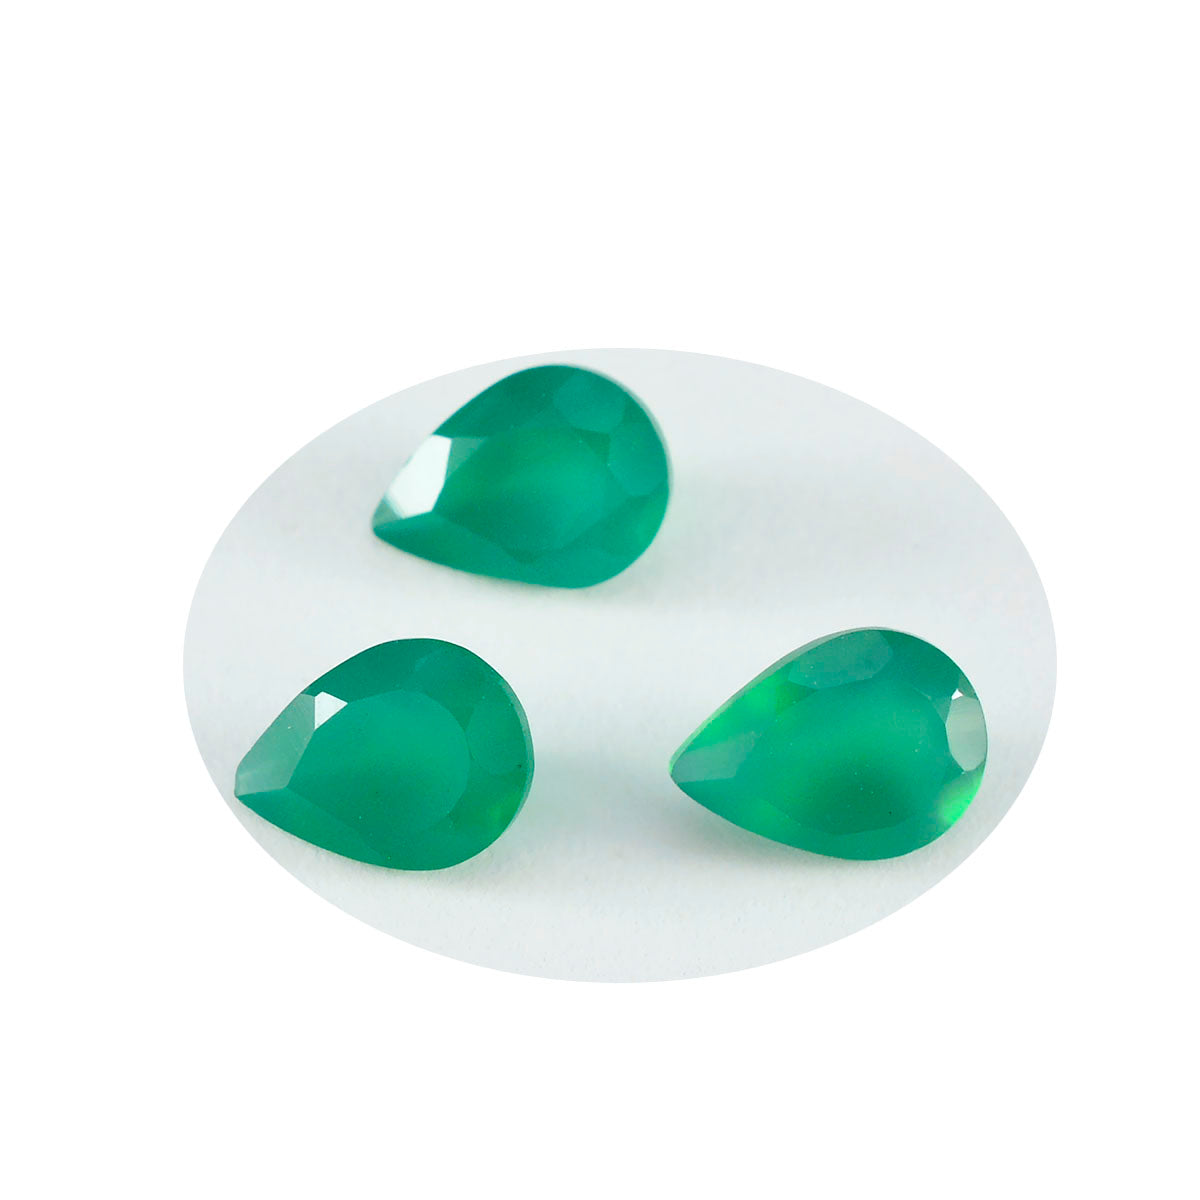 Riyogems 1 pièce d'onyx vert véritable à facettes 6x9mm en forme de poire, pierres précieuses de qualité incroyable